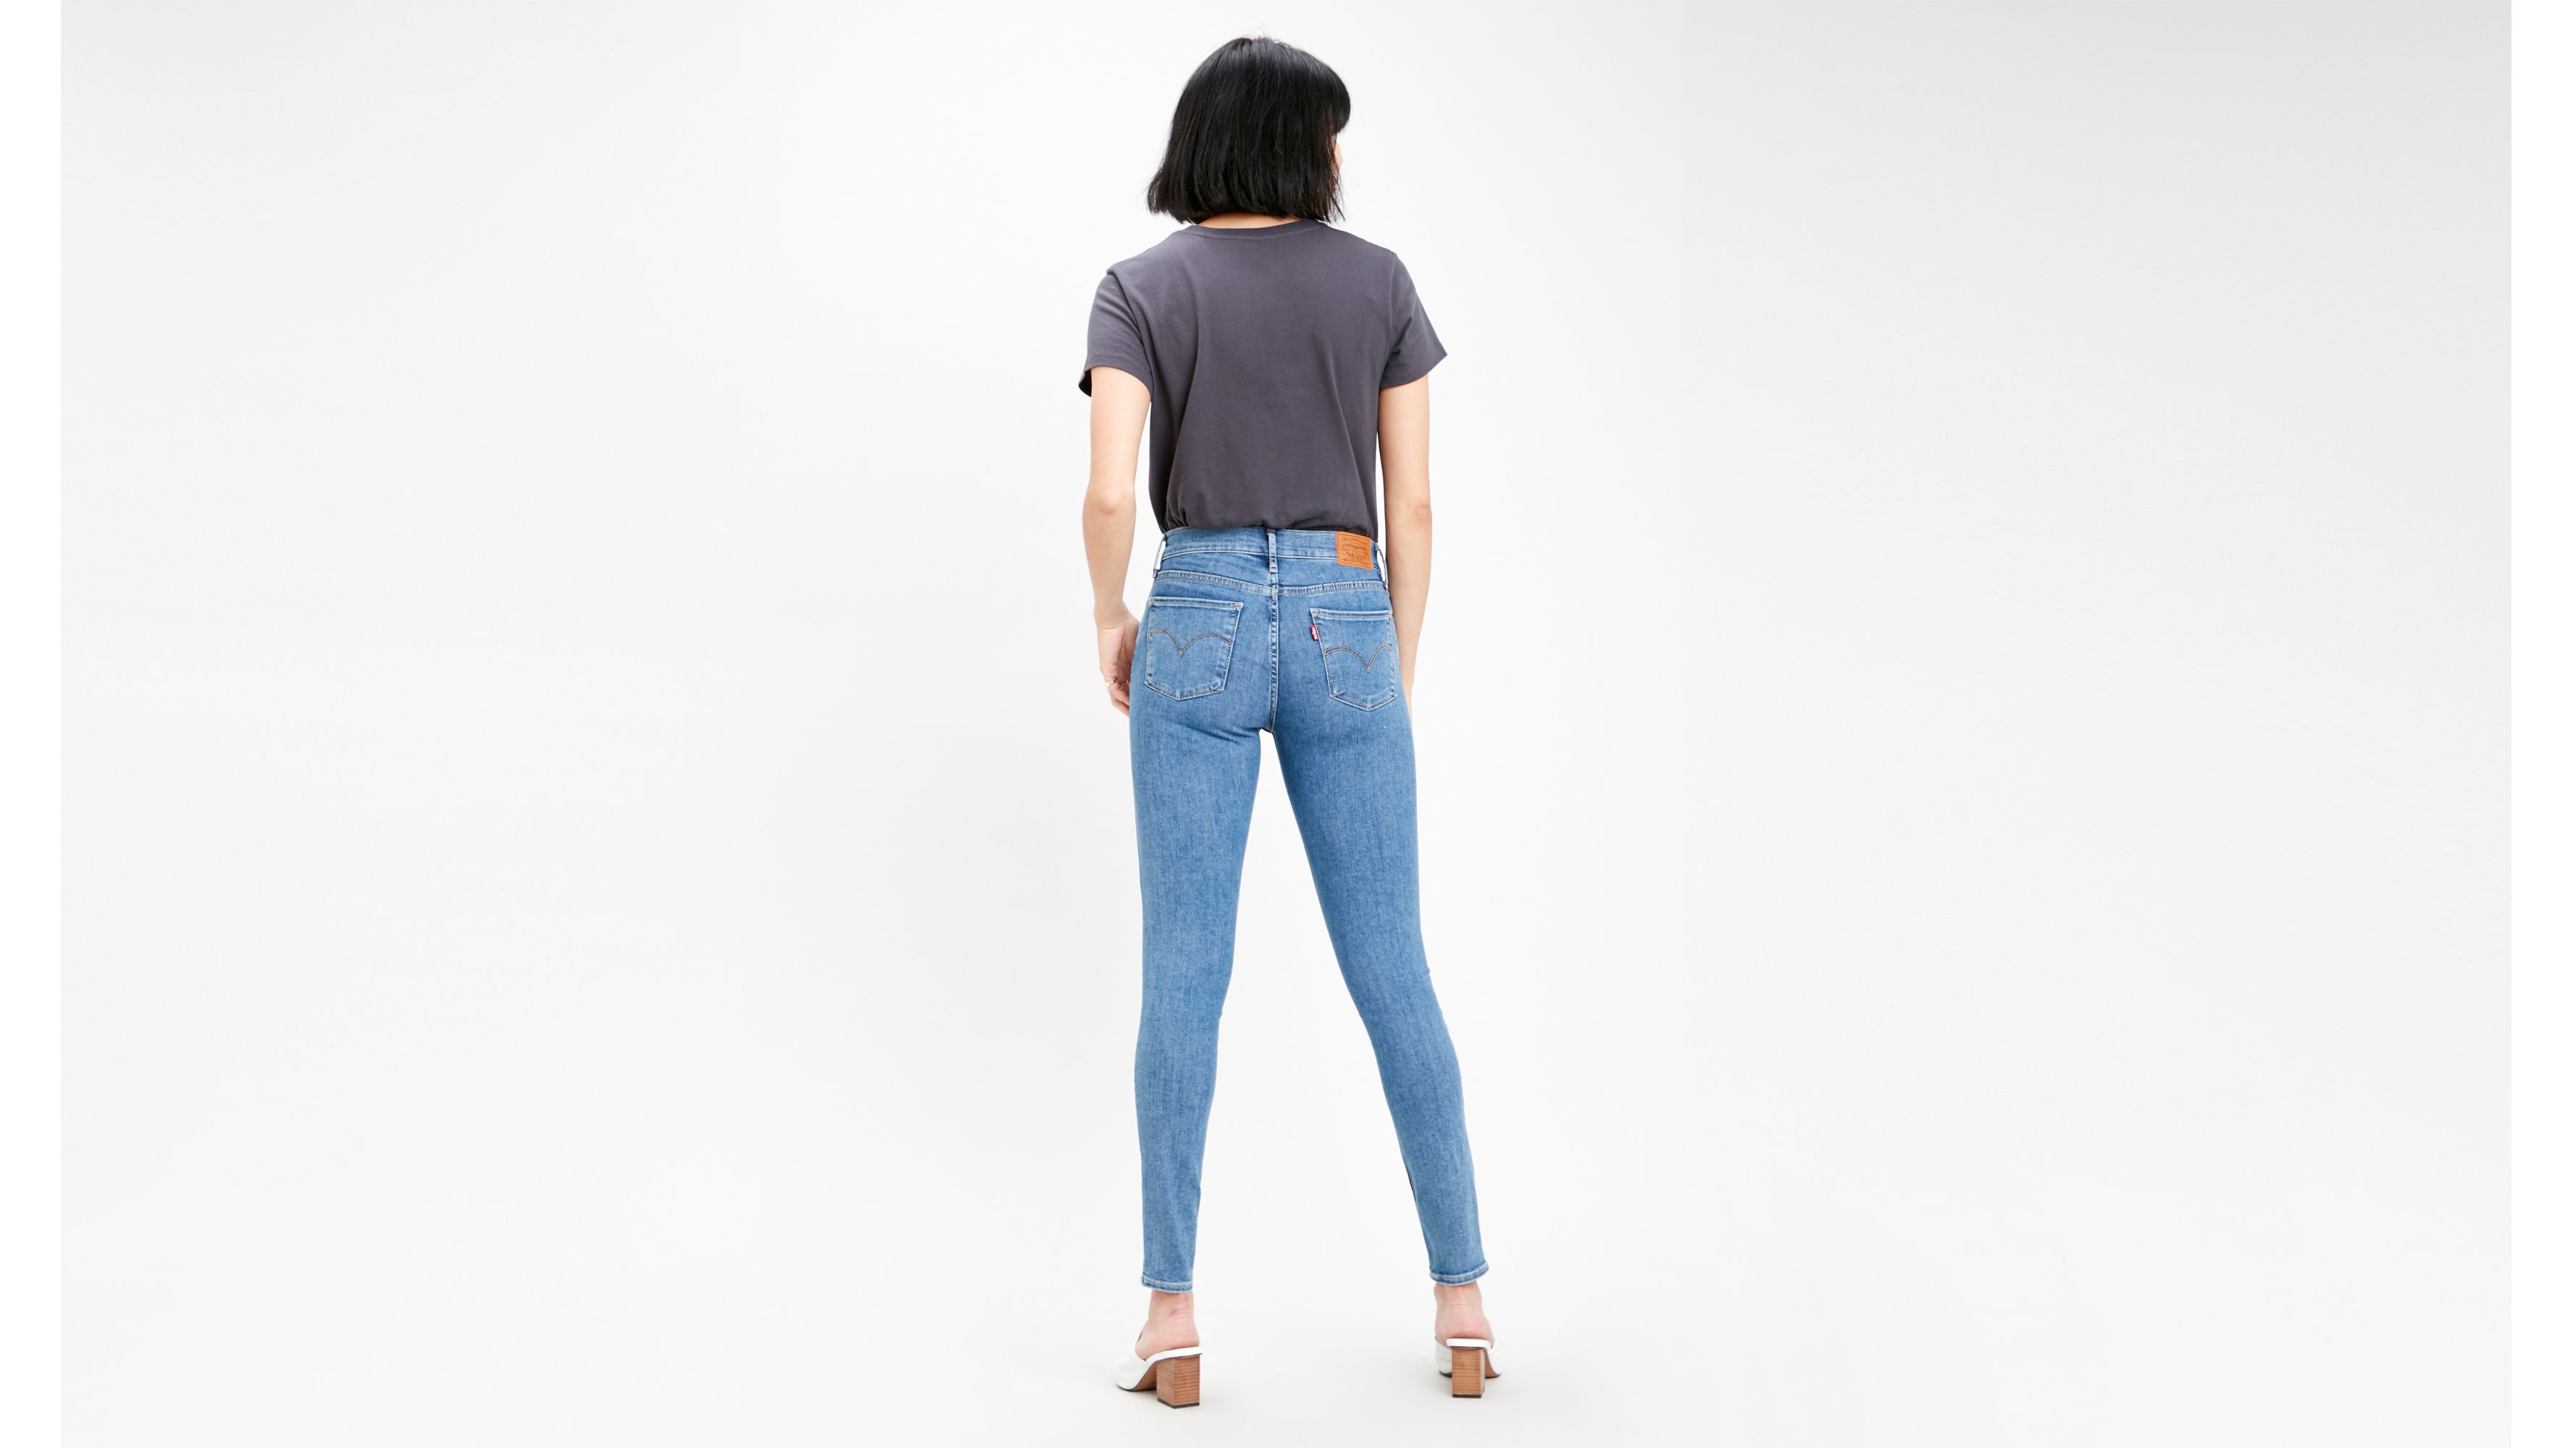 levi's innovation skinny jeans